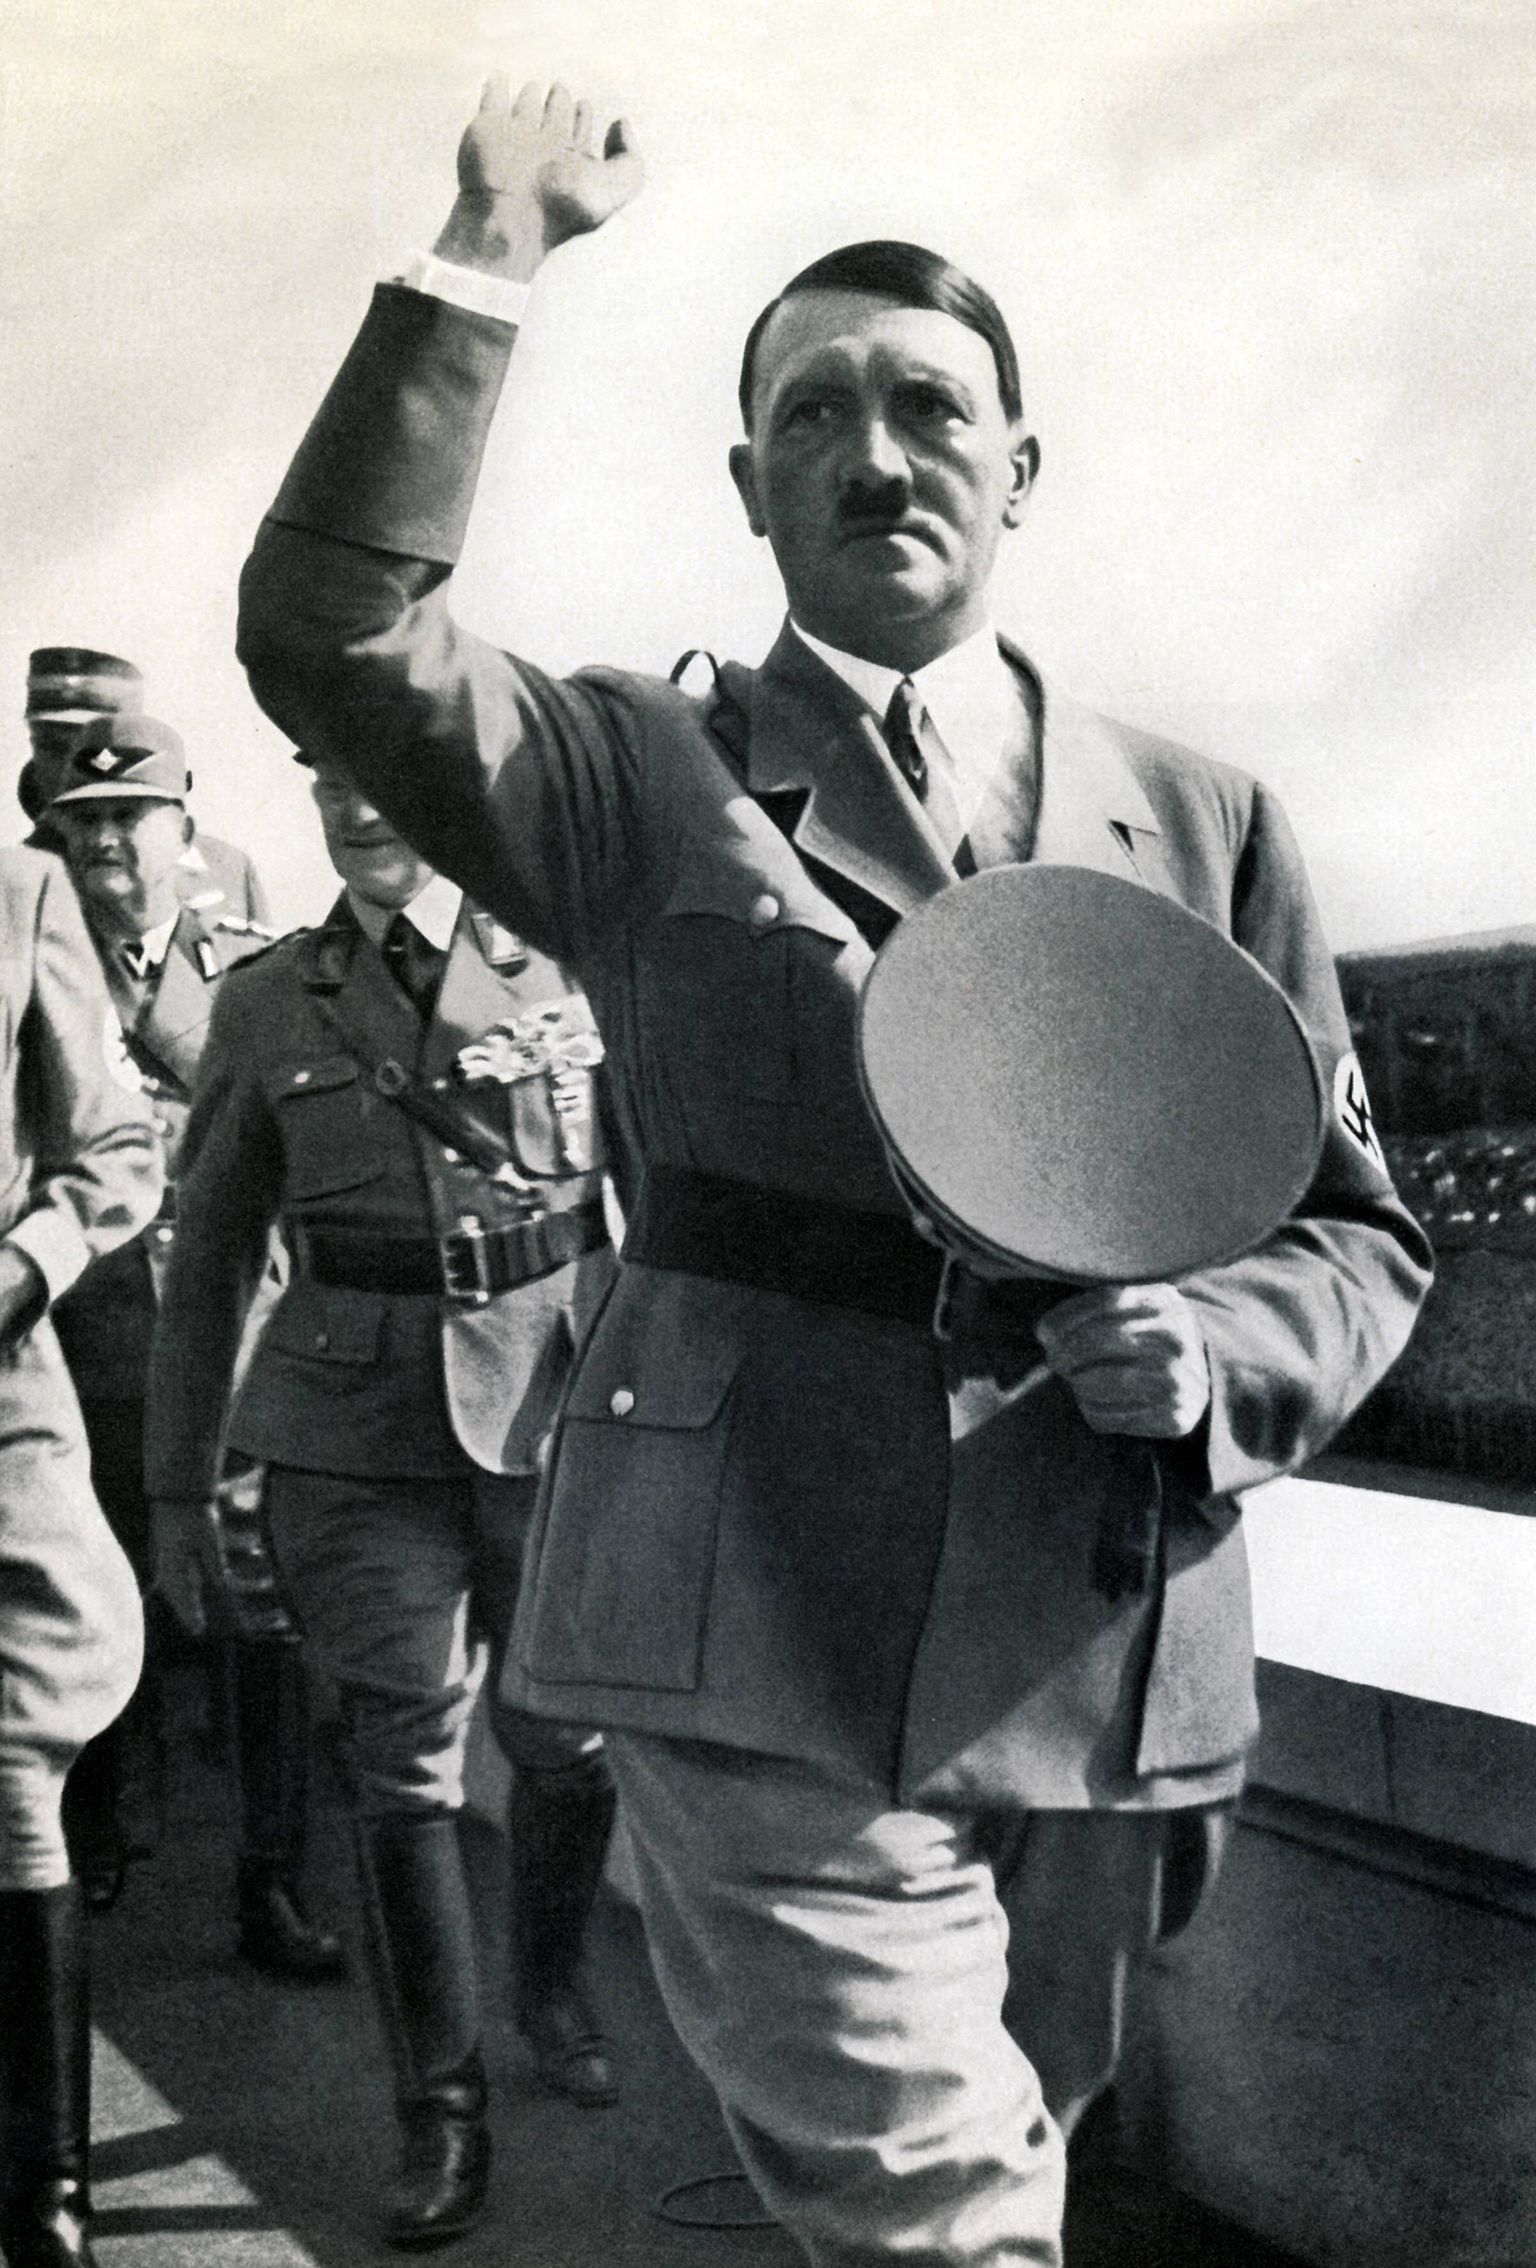 Saksa diktaator Adolf Hitler 9. septembril 1935 Nürnbergis, kus toimus natsionaalsotsialistliku Saksa töölispartei kongress